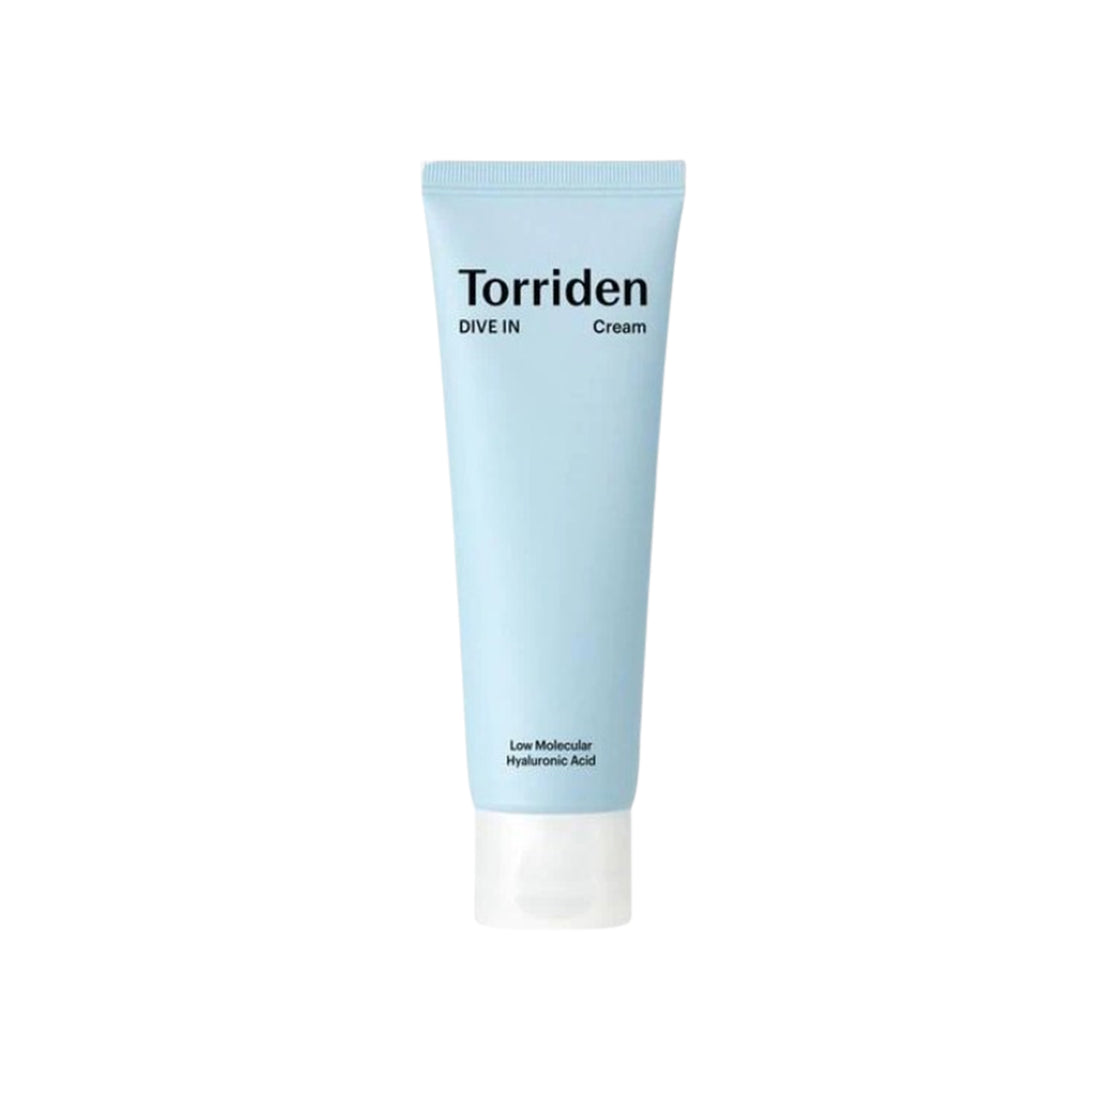 Torriden Dive In Low Molecular Hyaluronic Acid Cream